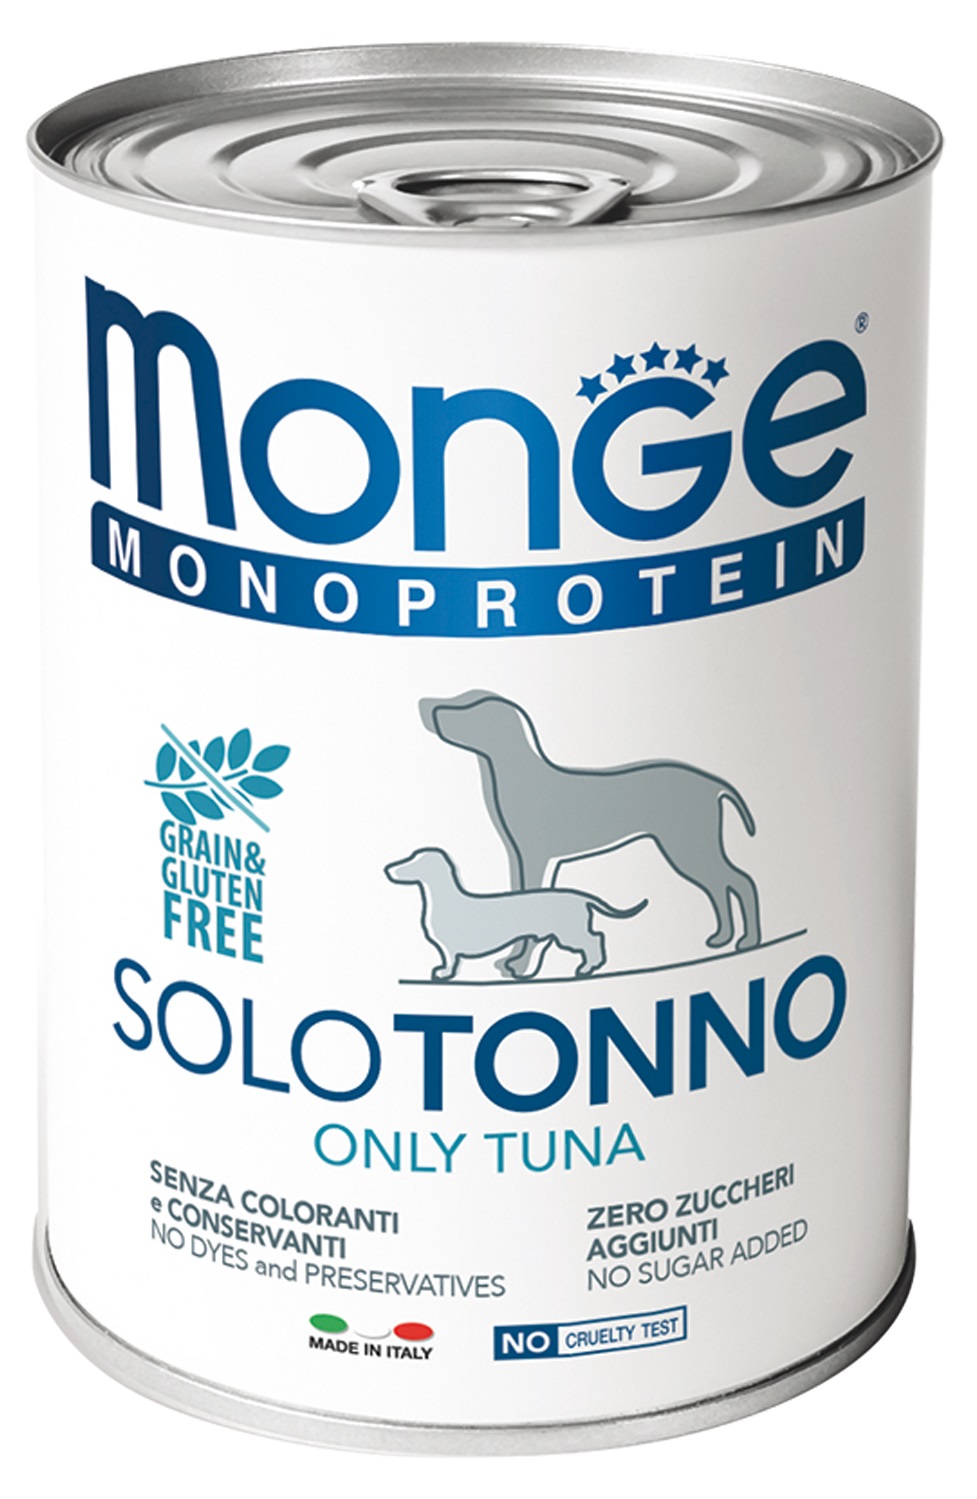 Корм для собак Monge dog monoprotein solo 400 г бан. паштет из тунца